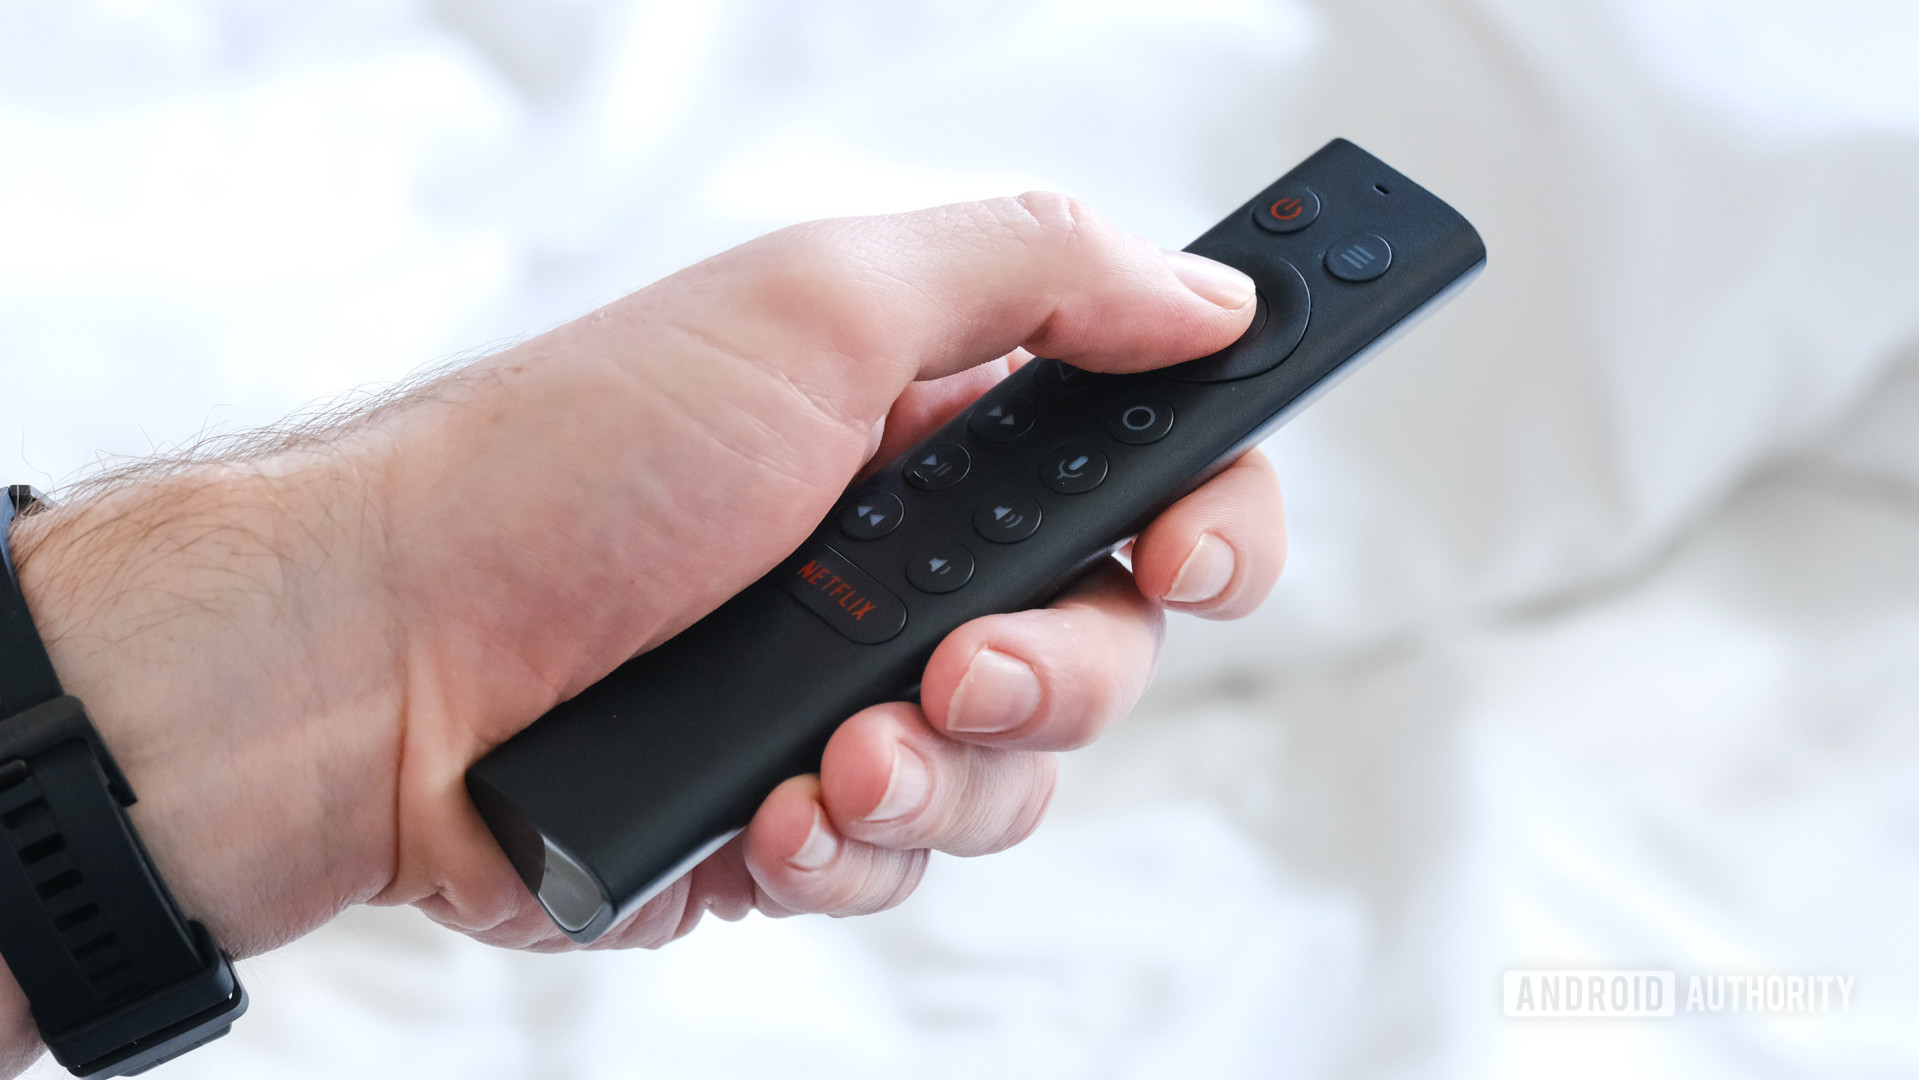 NVIDA Shield TV 2019 remote control in hand 1